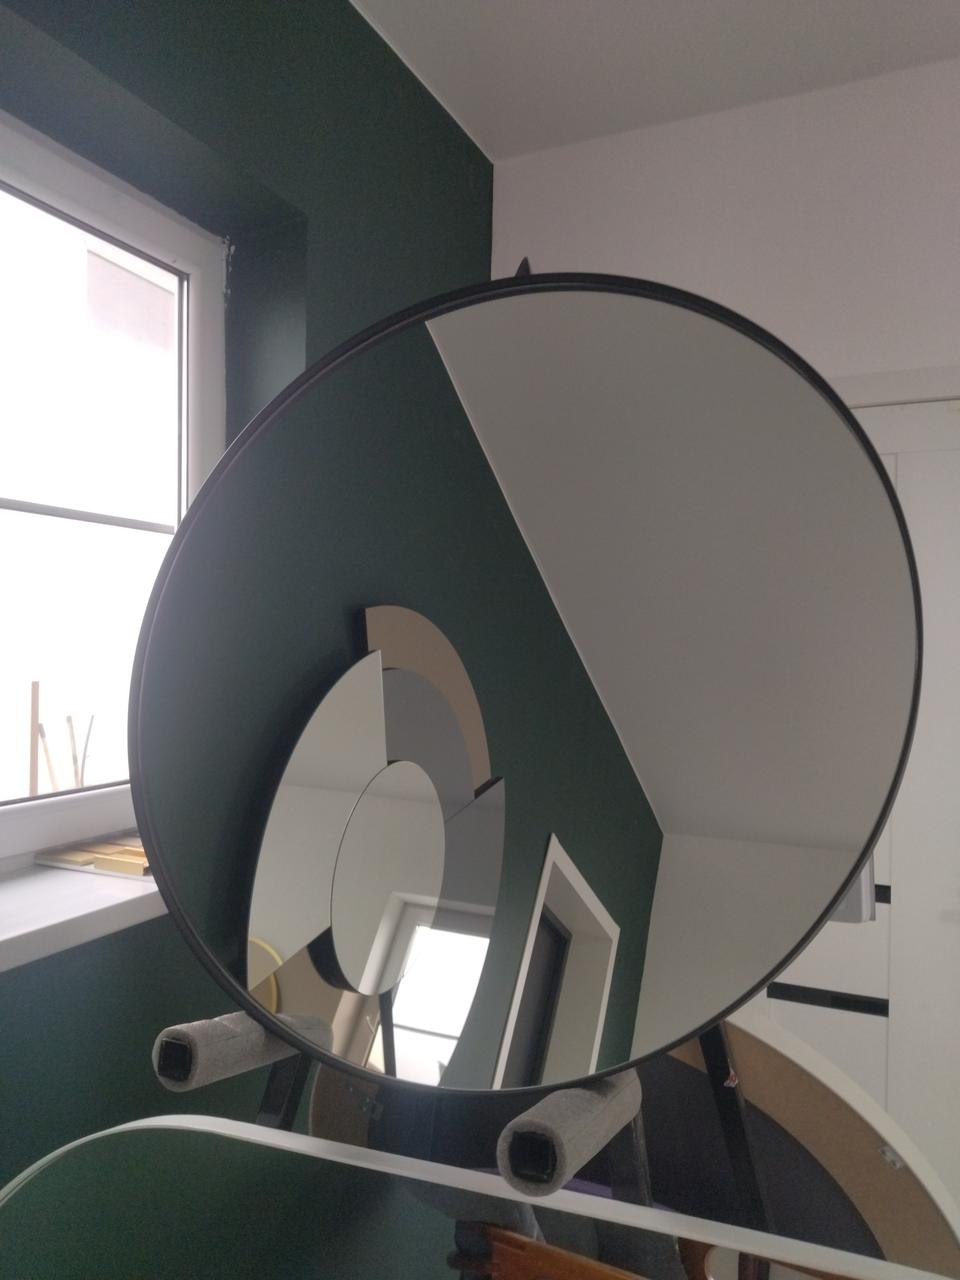 Metaldisk, круглое зеркало в черной металлической раме, d=810 мм